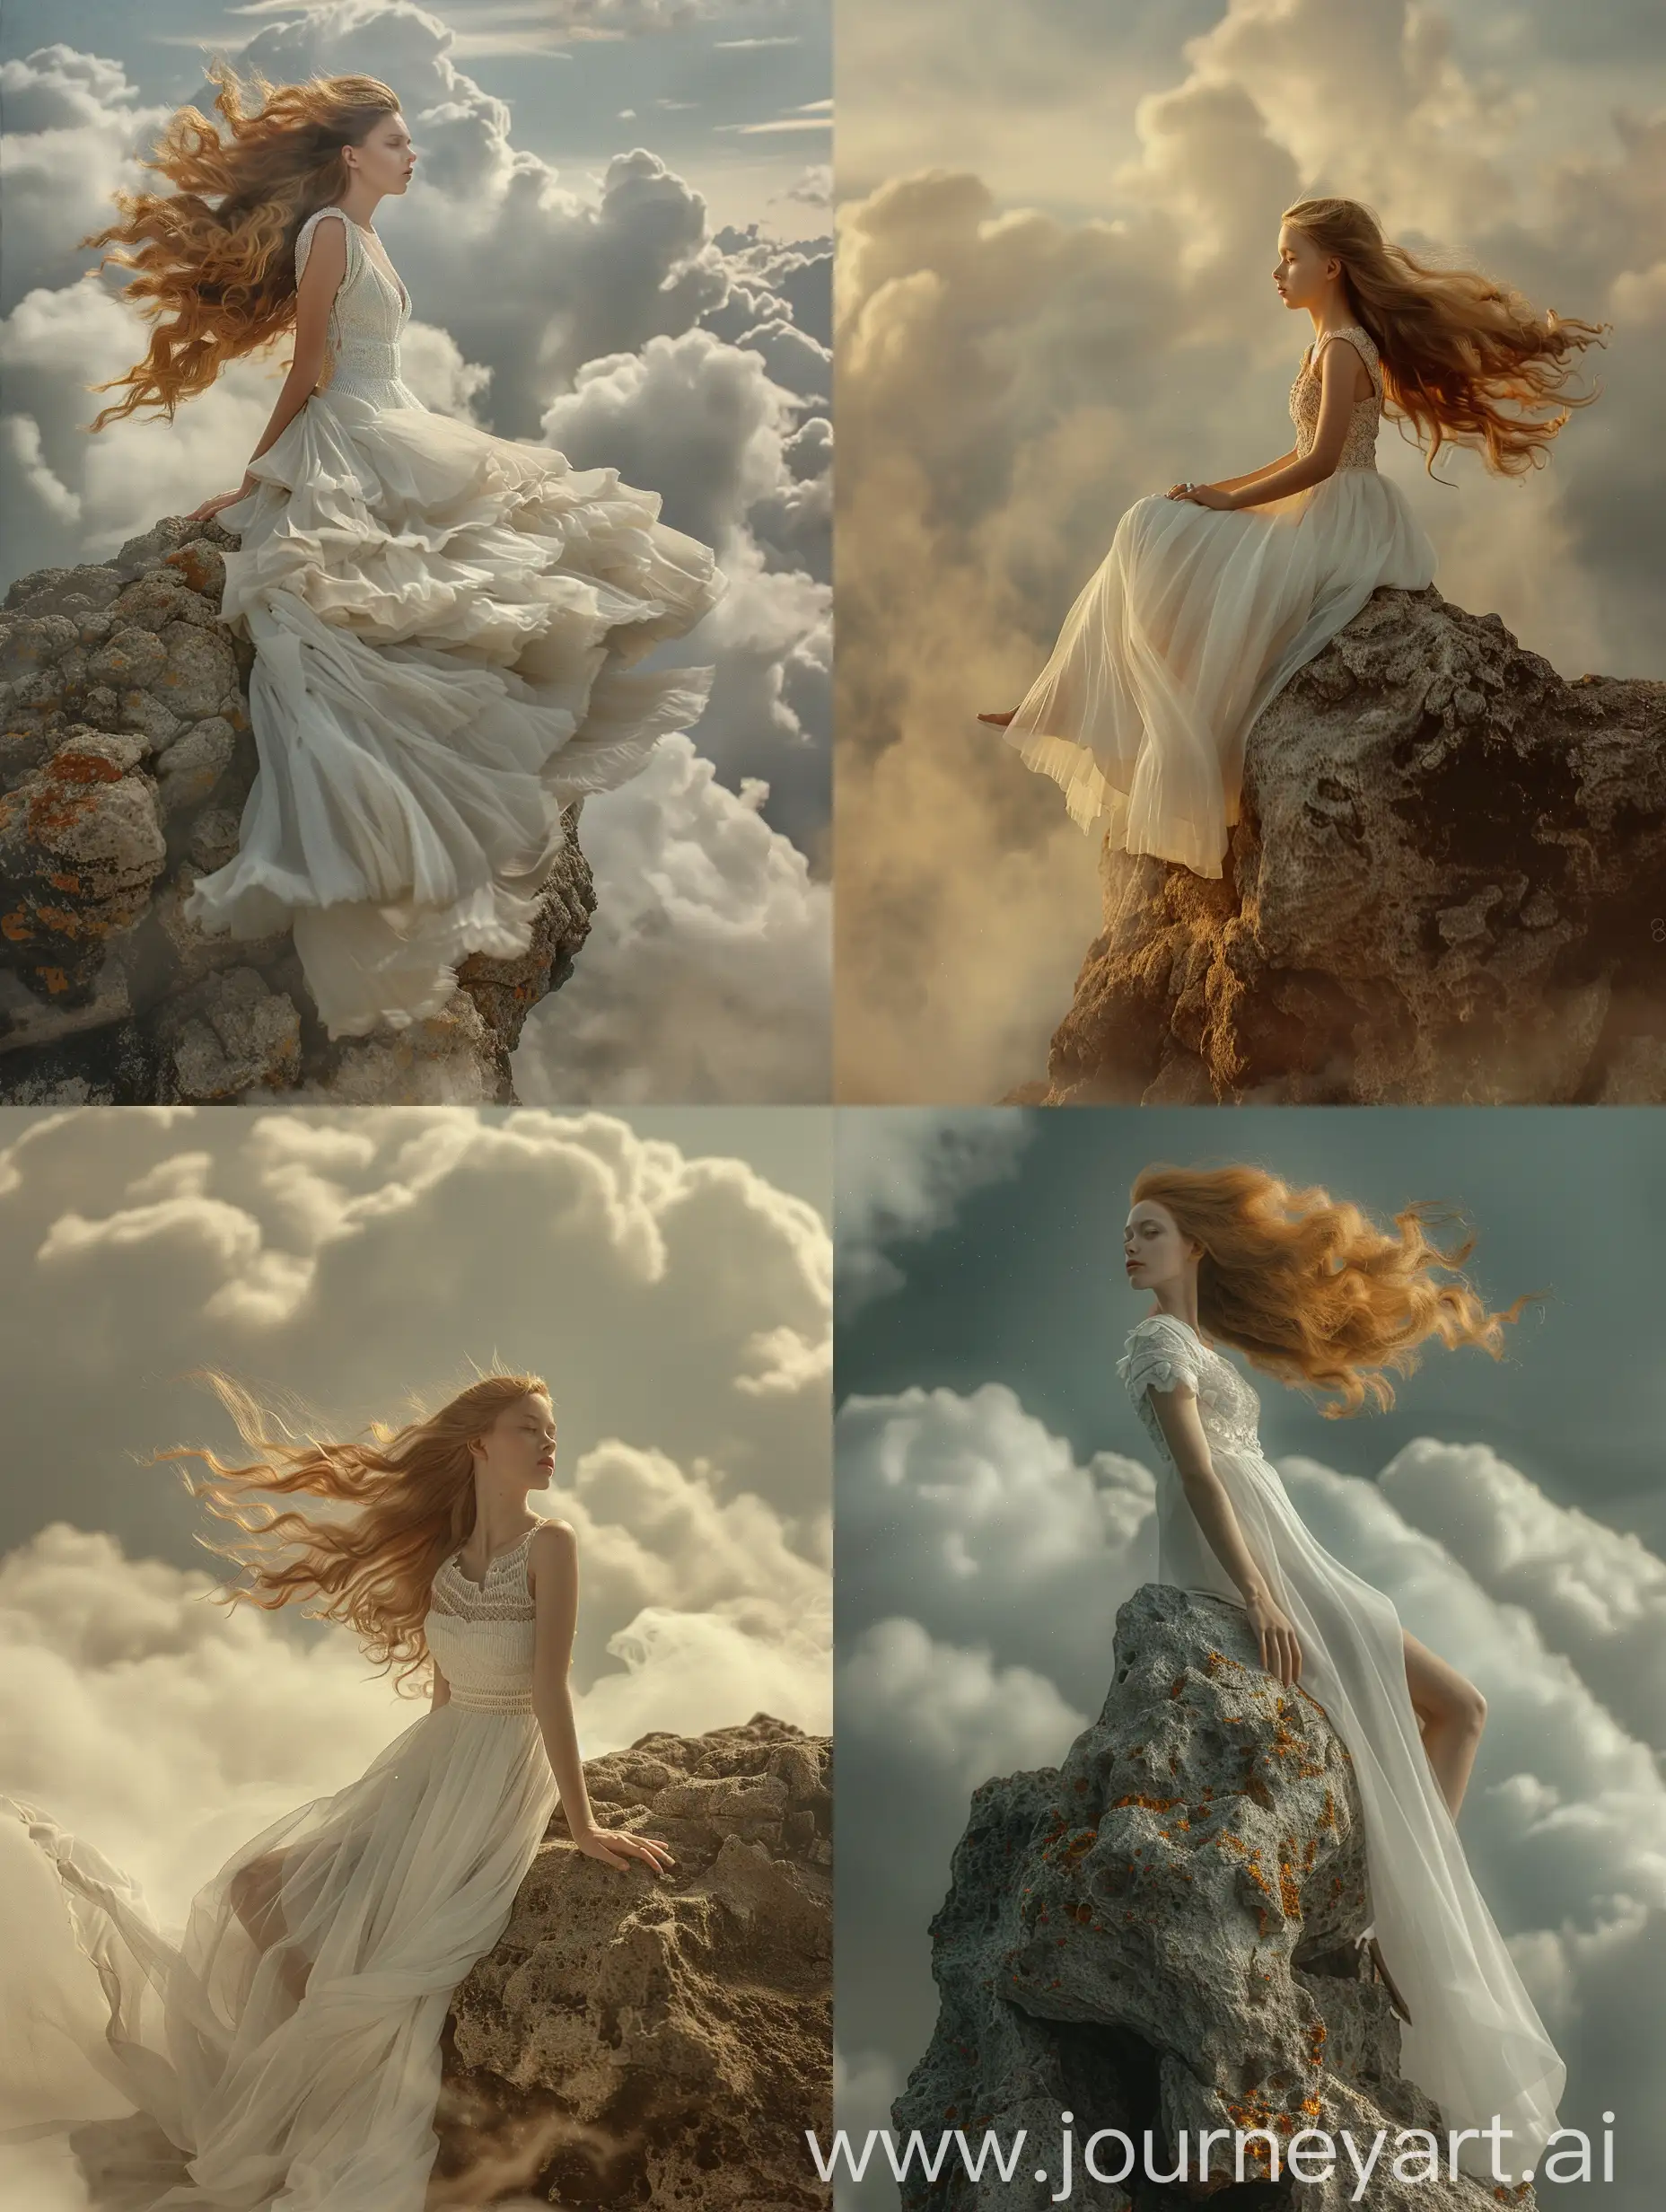 Девушка в белом фантастическом платье, летящие золотые волосы, сидит боком на огромном камне, облака, 8k, дымка, ультодетализация, плёночная фотография, рассеяние света, тенденции на артстанции, резкий фокус, высокая детализация